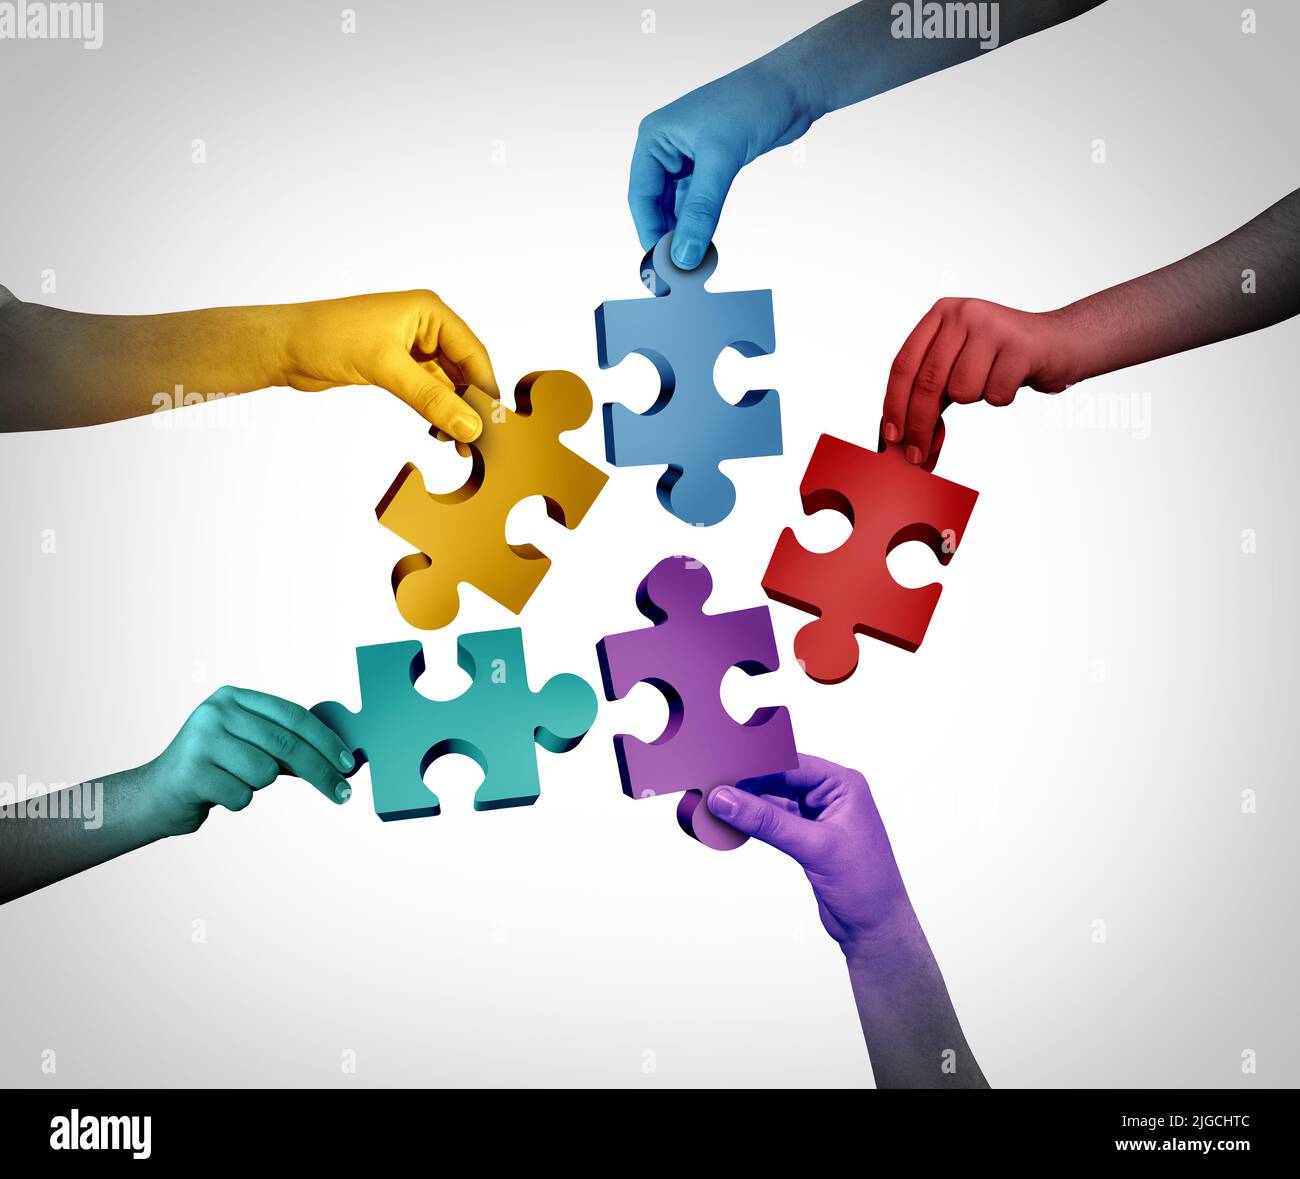 Business Team Success métaphore et la collaboration communautaire en tant que société diversifiée dans un effort conjoint reliant des pièces de puzzle. Banque D'Images